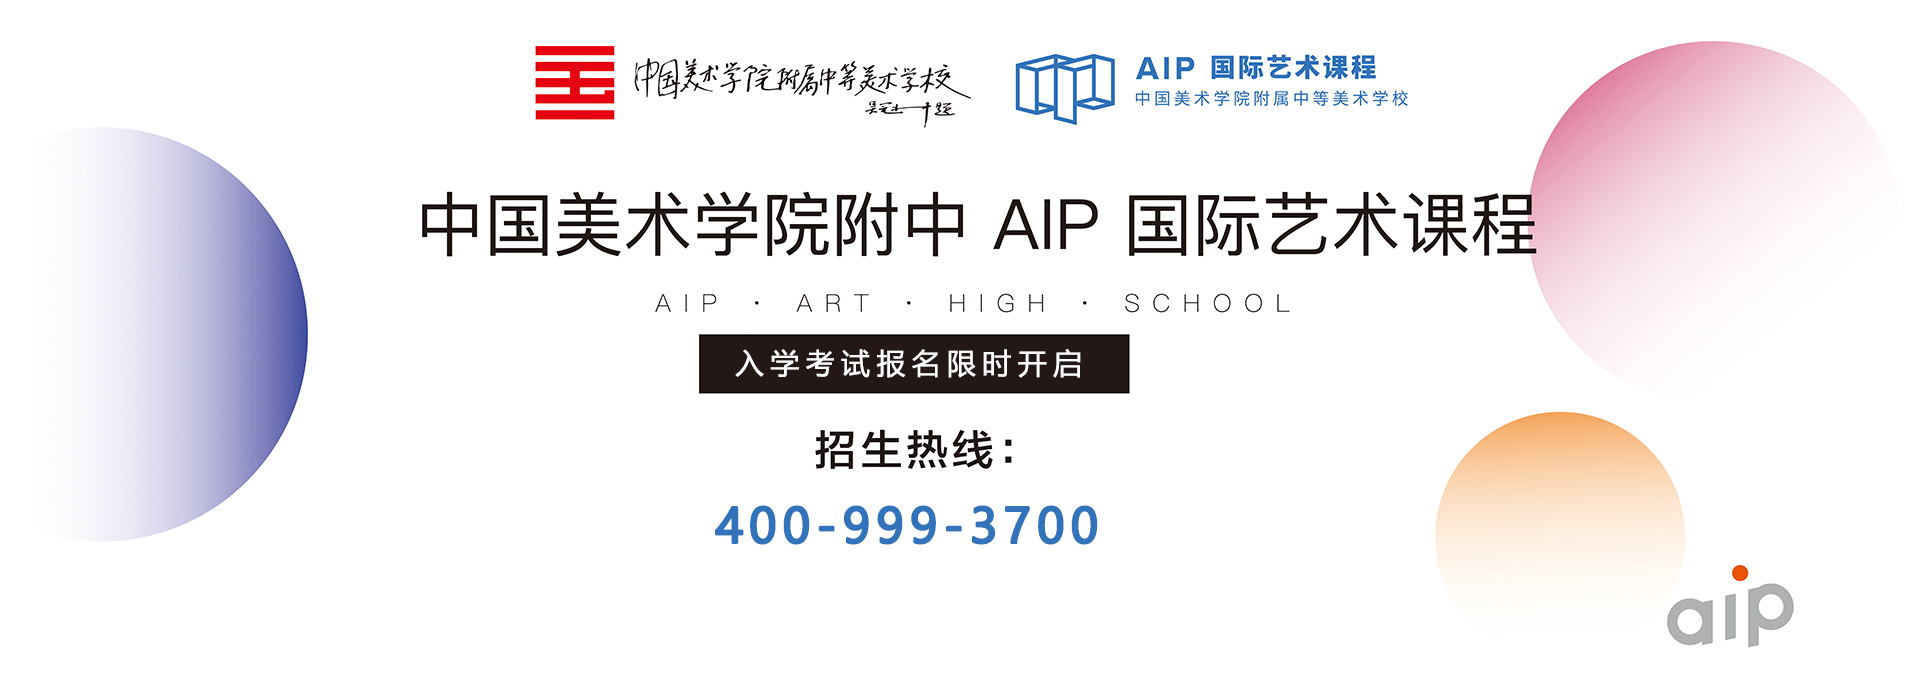 2022年中国美术学院附中aip国际部入学考试开启